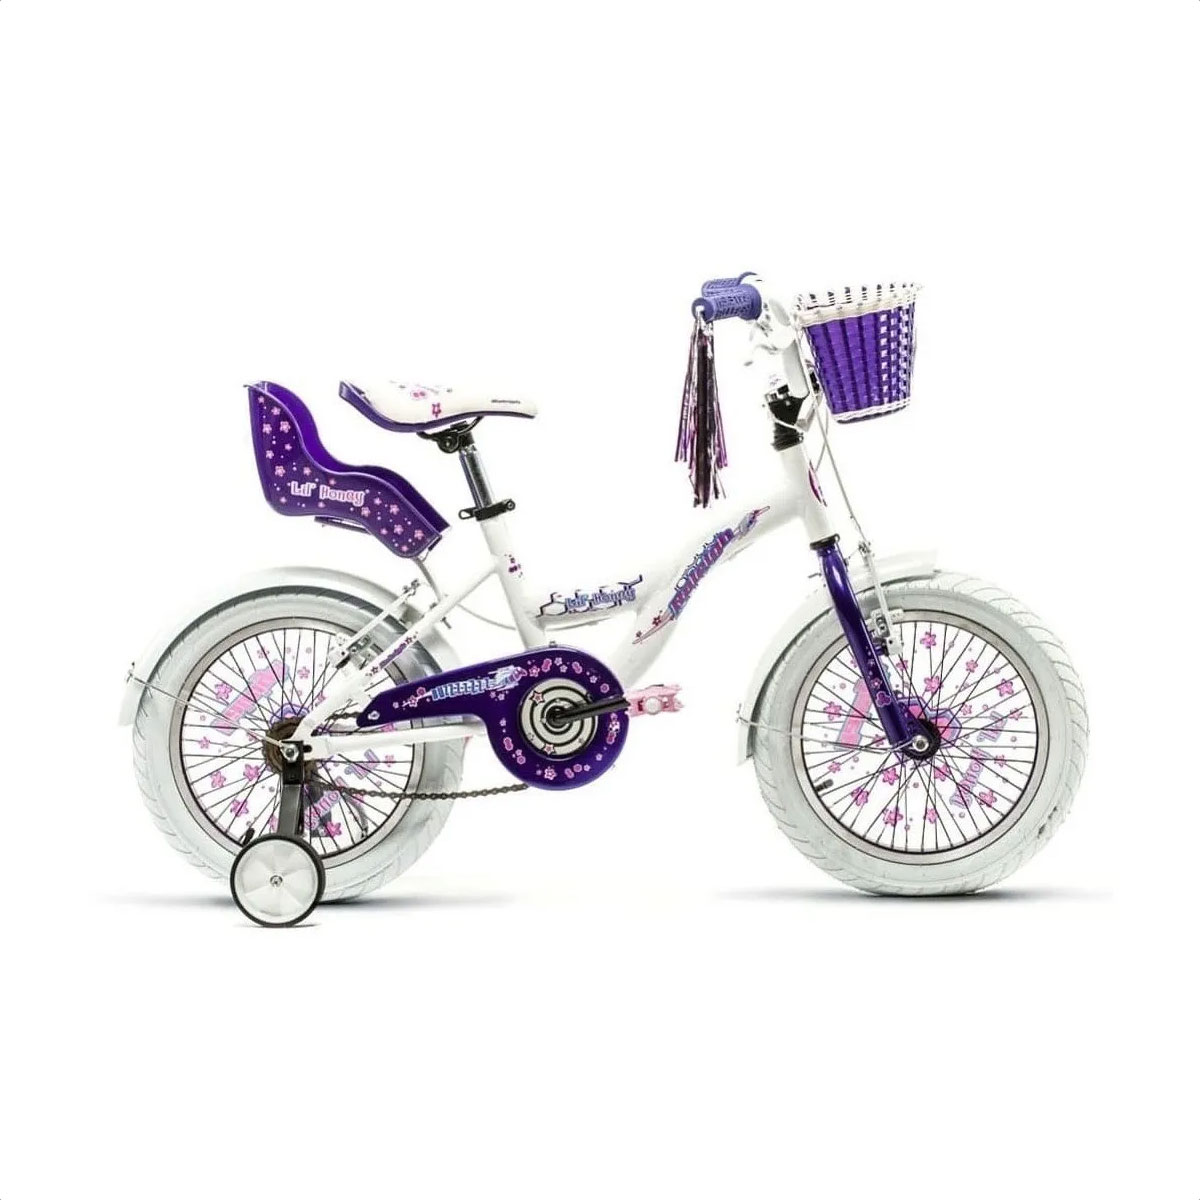 Válvulas Presta Tubeless Encore Premium 44mm (Violeta) – Epic Bikes